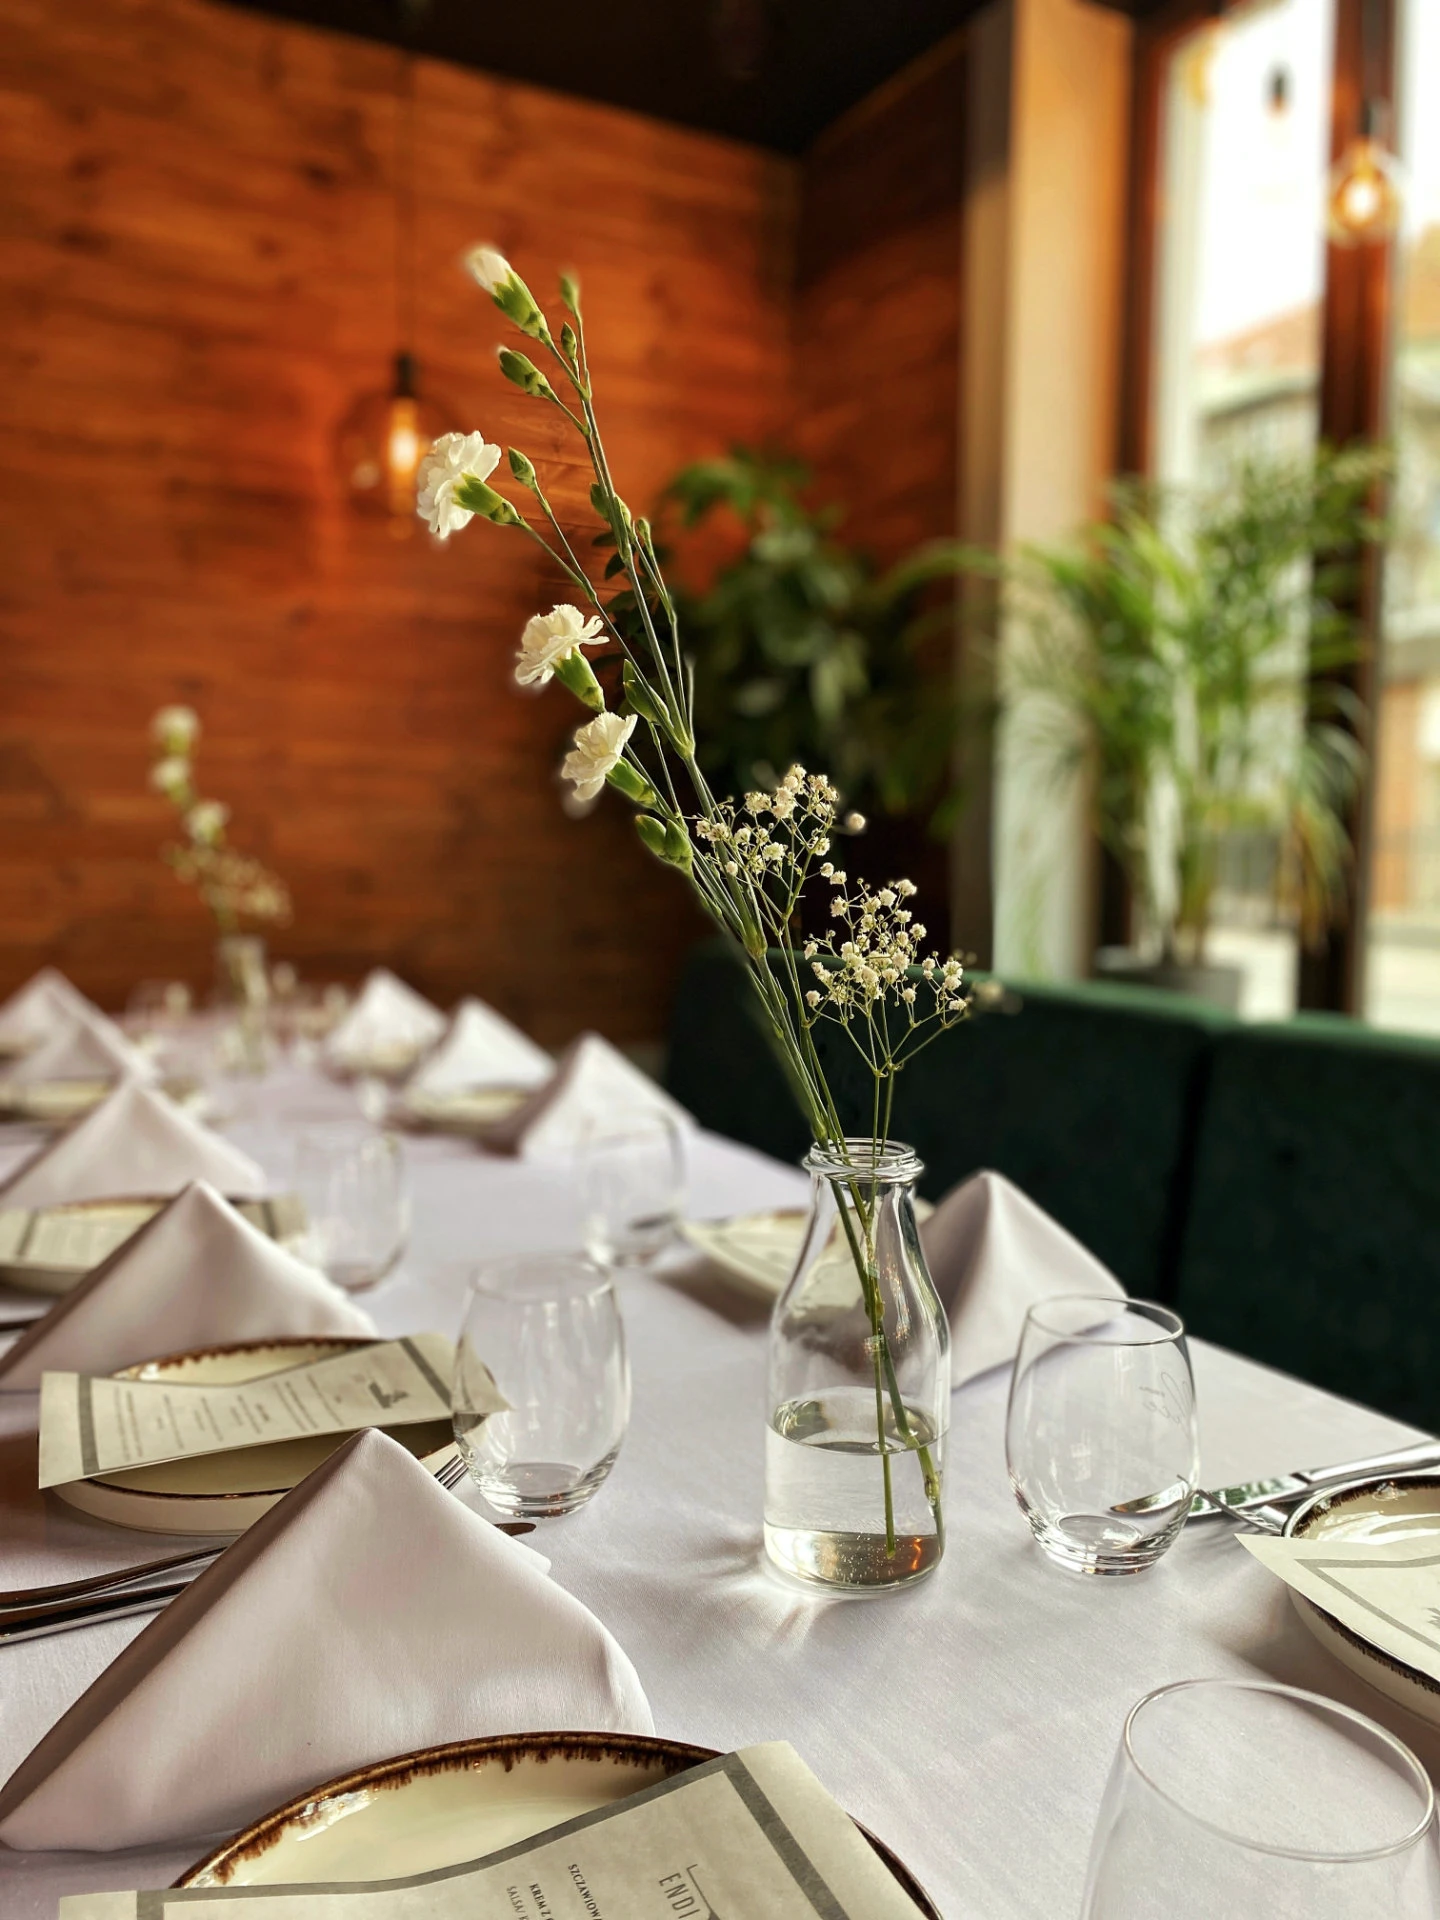 Podłużny stół w restauracji nakryty białym, klasycznym obrusem. Na stole znajdują się kremowe talerzyki, z ozdobnymi brzegami, obok nich trójkątnie złożone białe serwetki, srebrne sztućce oraz puste szklanki na napoje. Na każdym talerzyku leży menu przygotowane na uroczystość. W dwóch prostych, szklanych wazonach znajdują się delikatne, białe polne kwiaty.